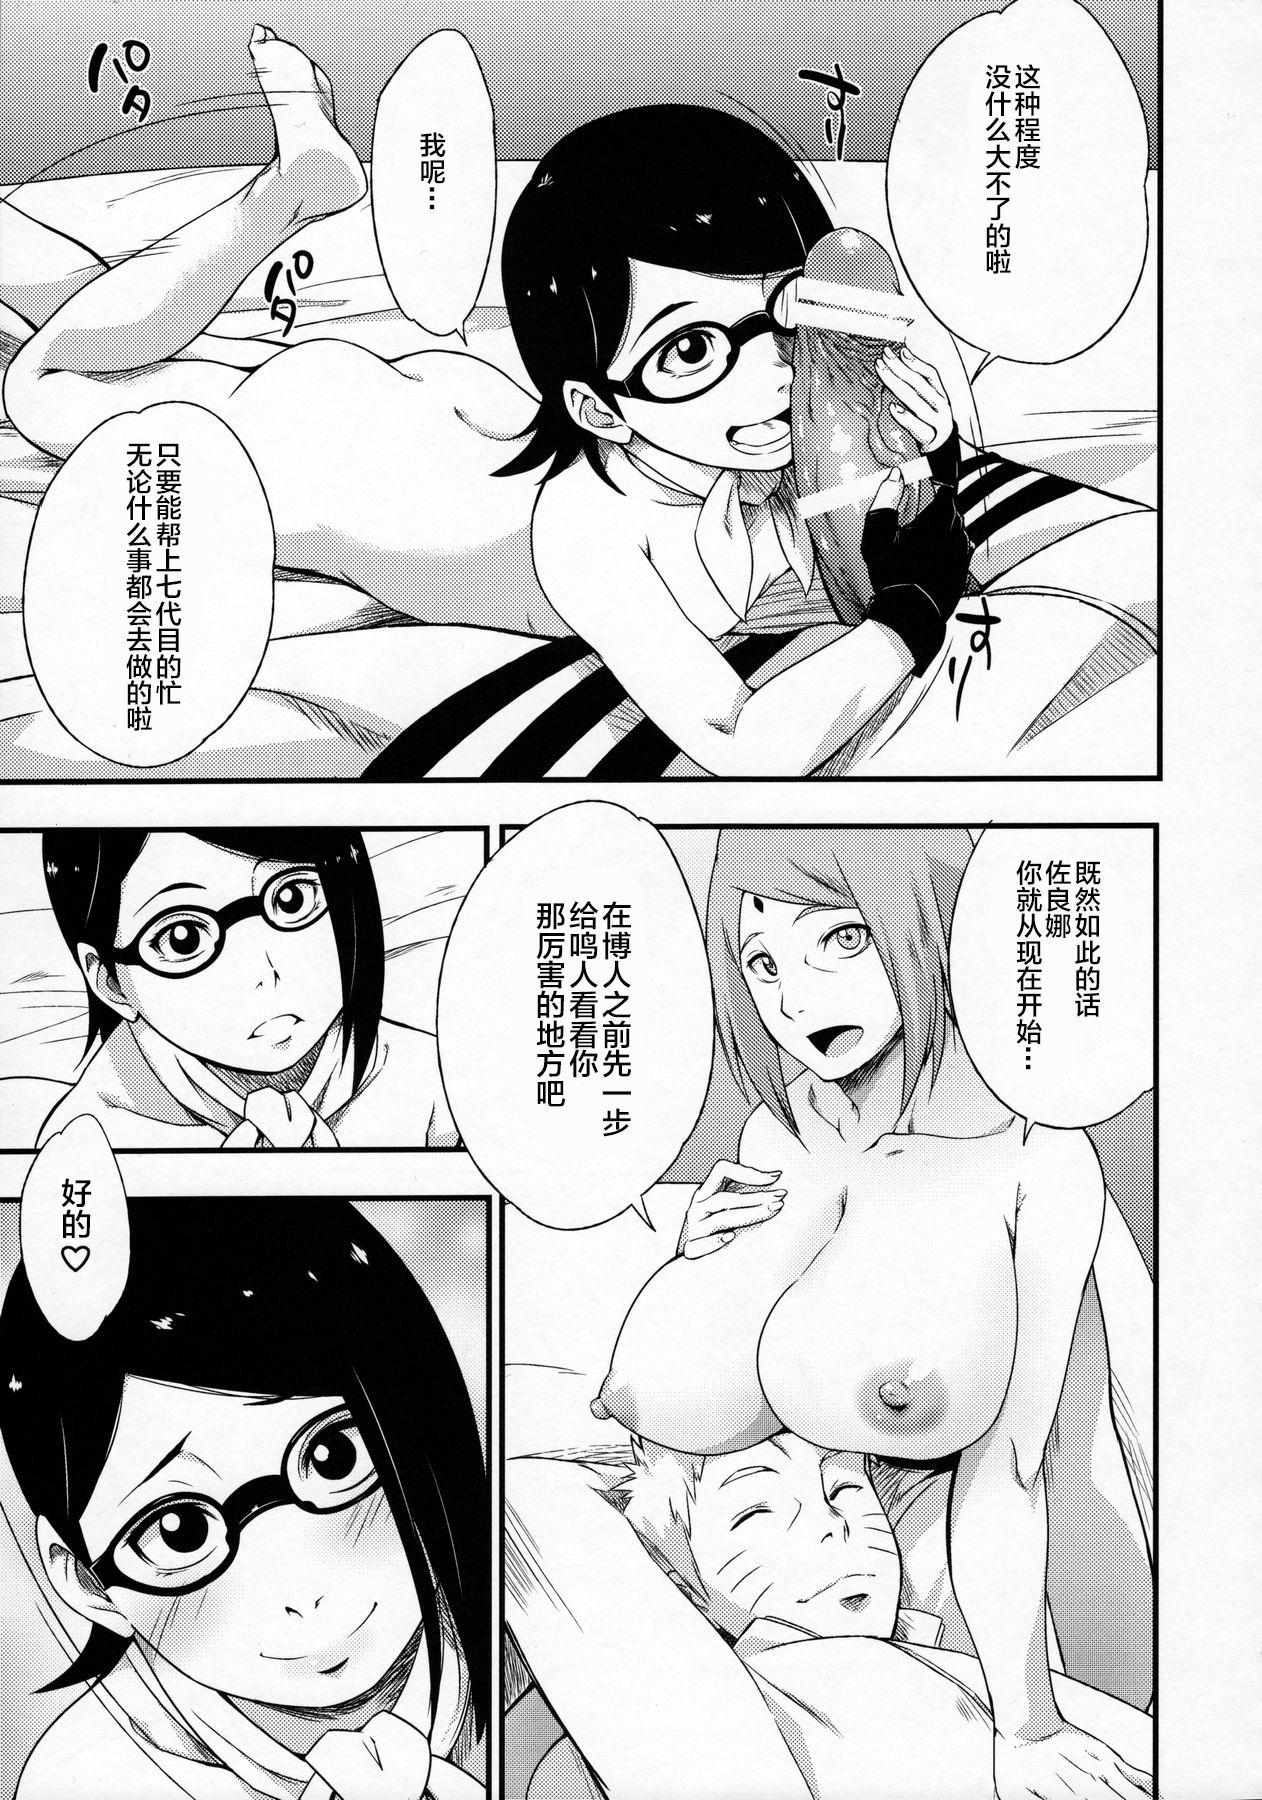 Konoha-don Yasaimashi Page 8 Of 28 naruto hentai comic, Konoha-don Yasaimas...